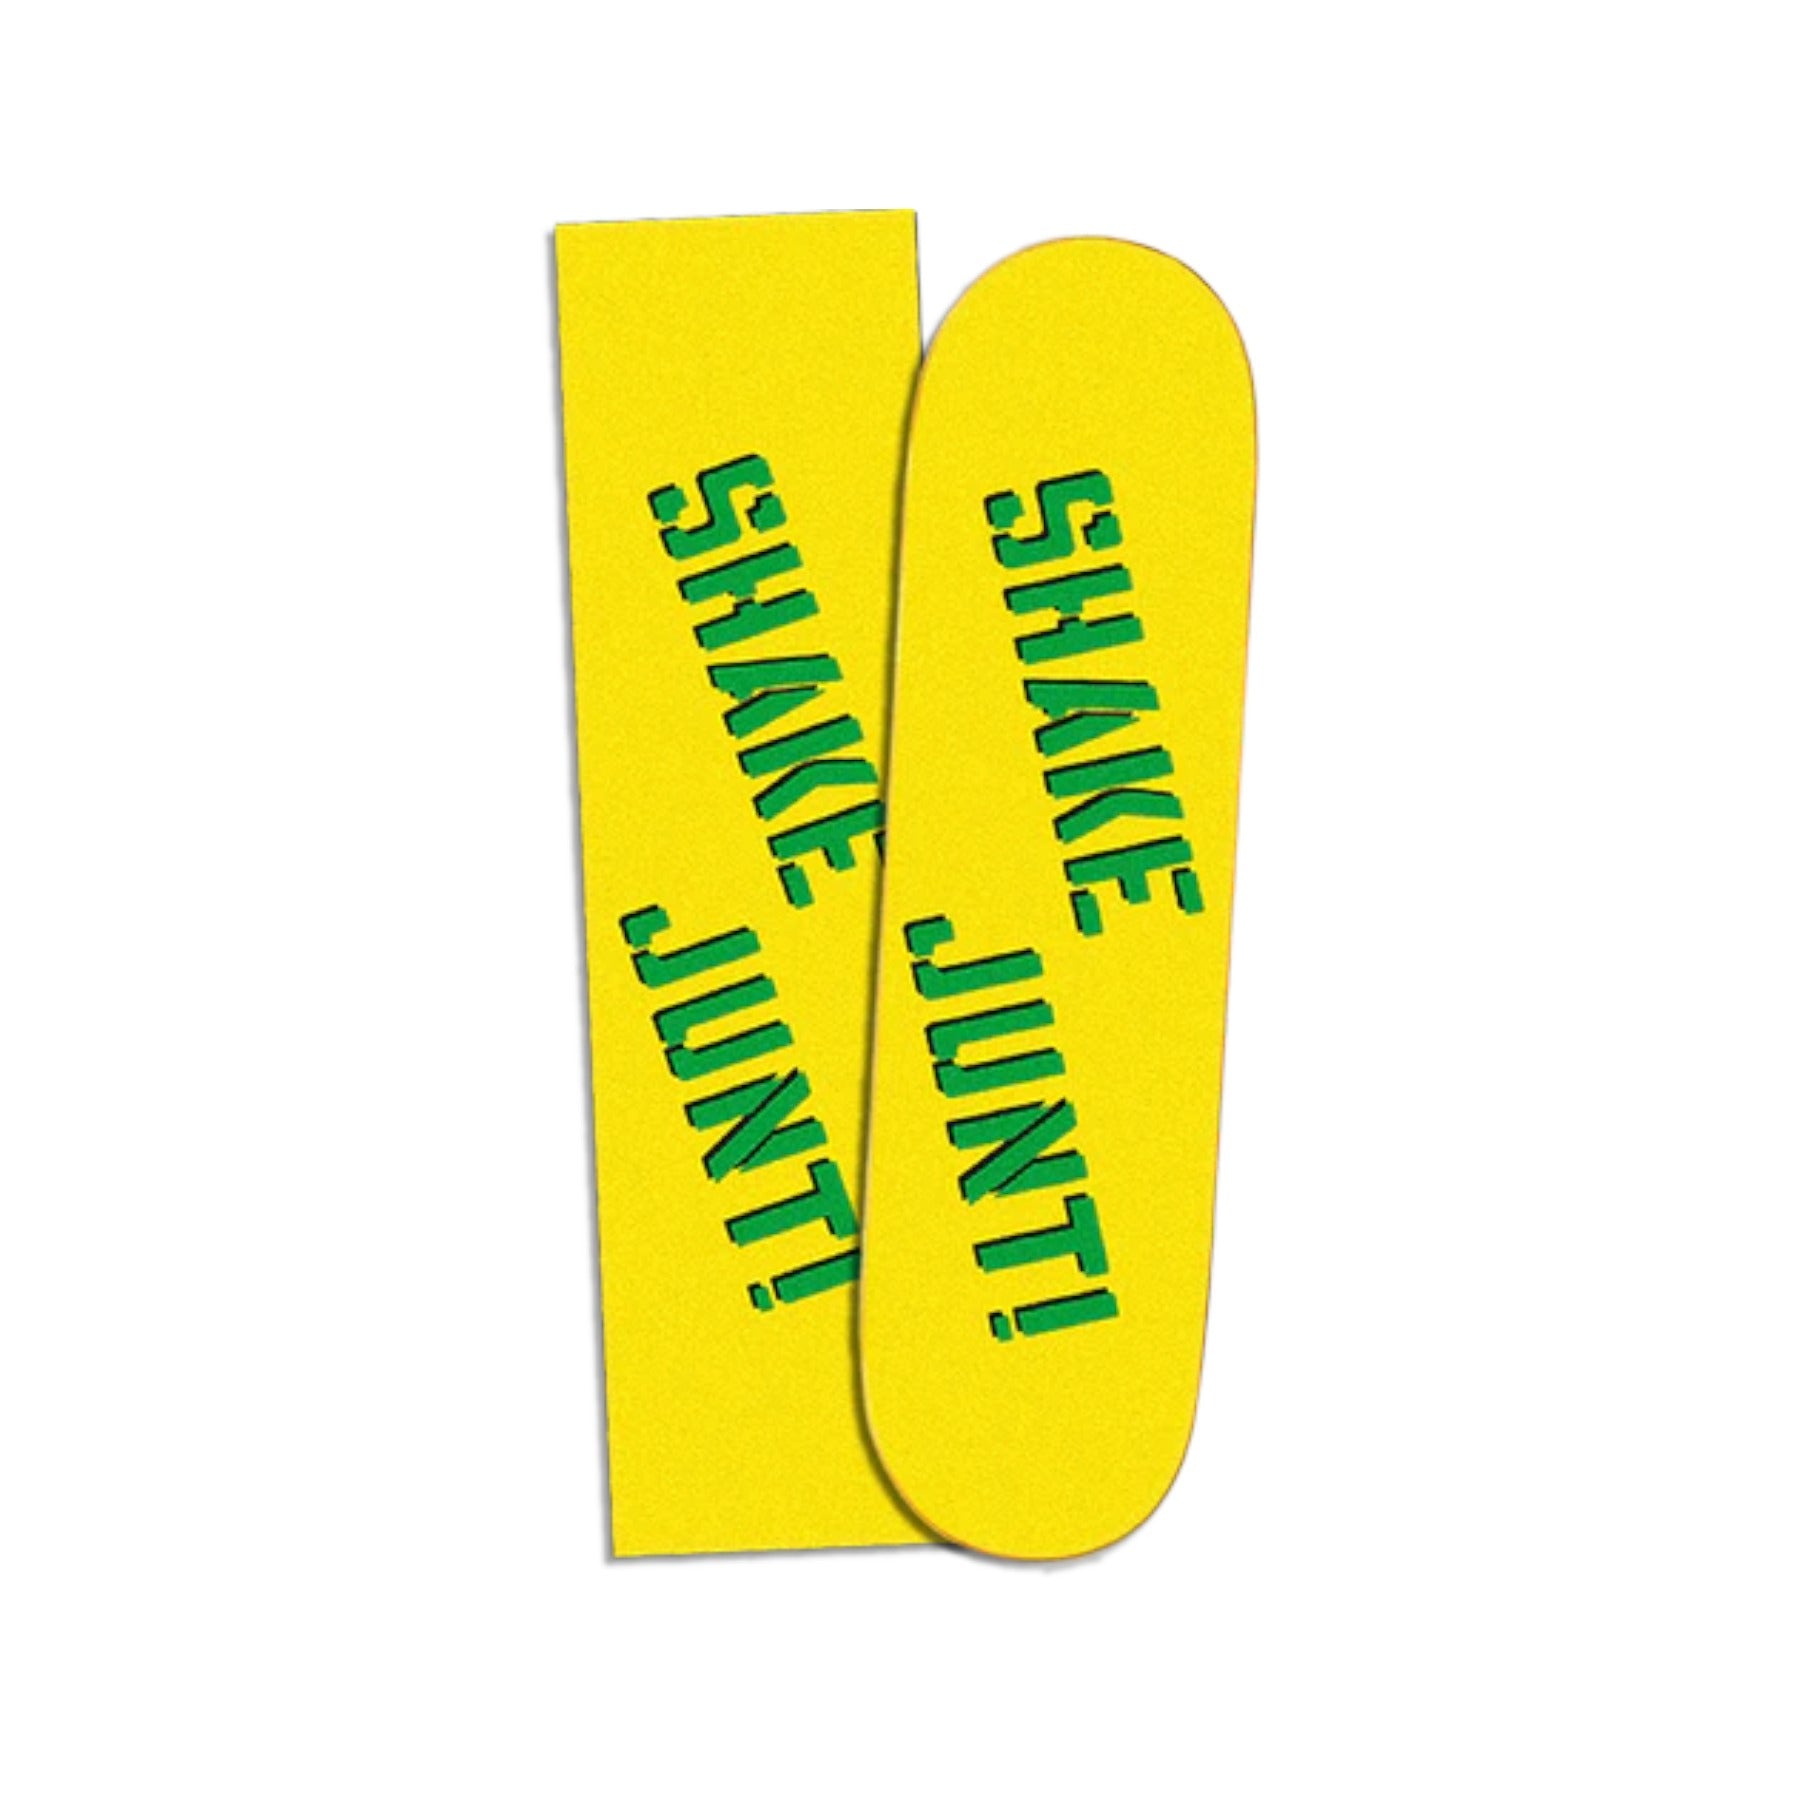 Shake Junt Spray Grip Tape - Yellow/Green